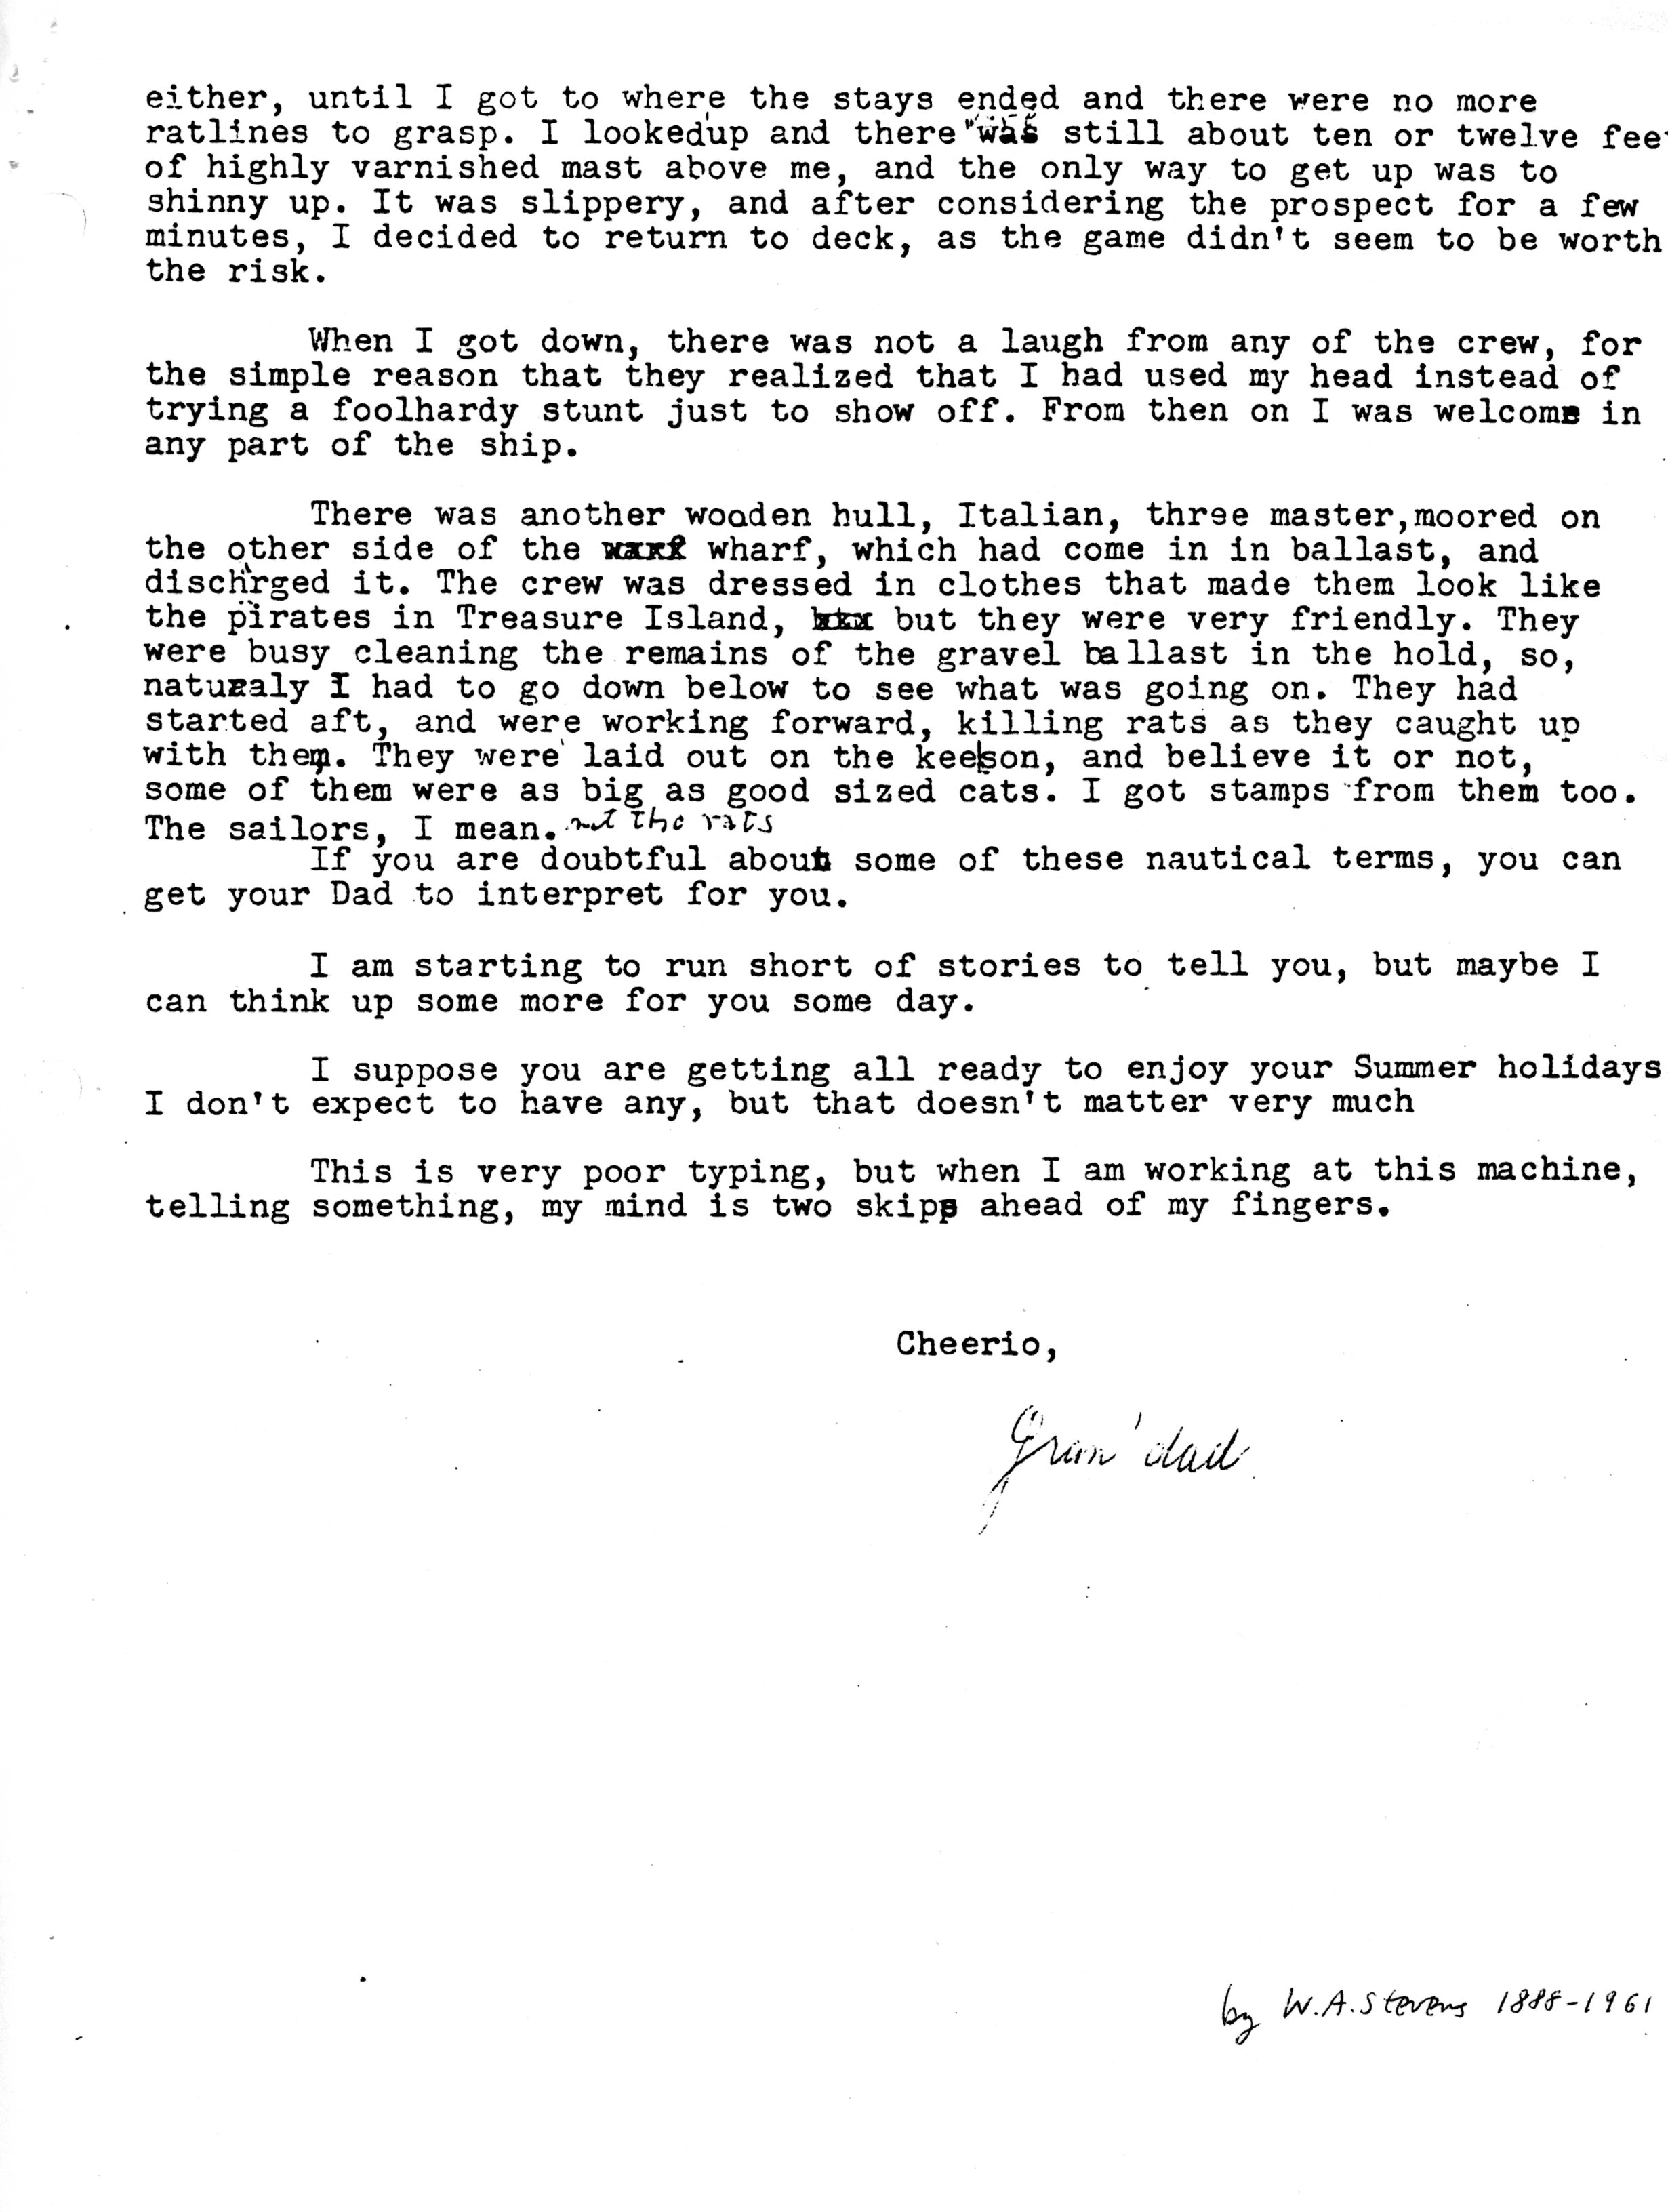 1960-06-25 p2 of 2 Letters from Wm Arnott STEVENS